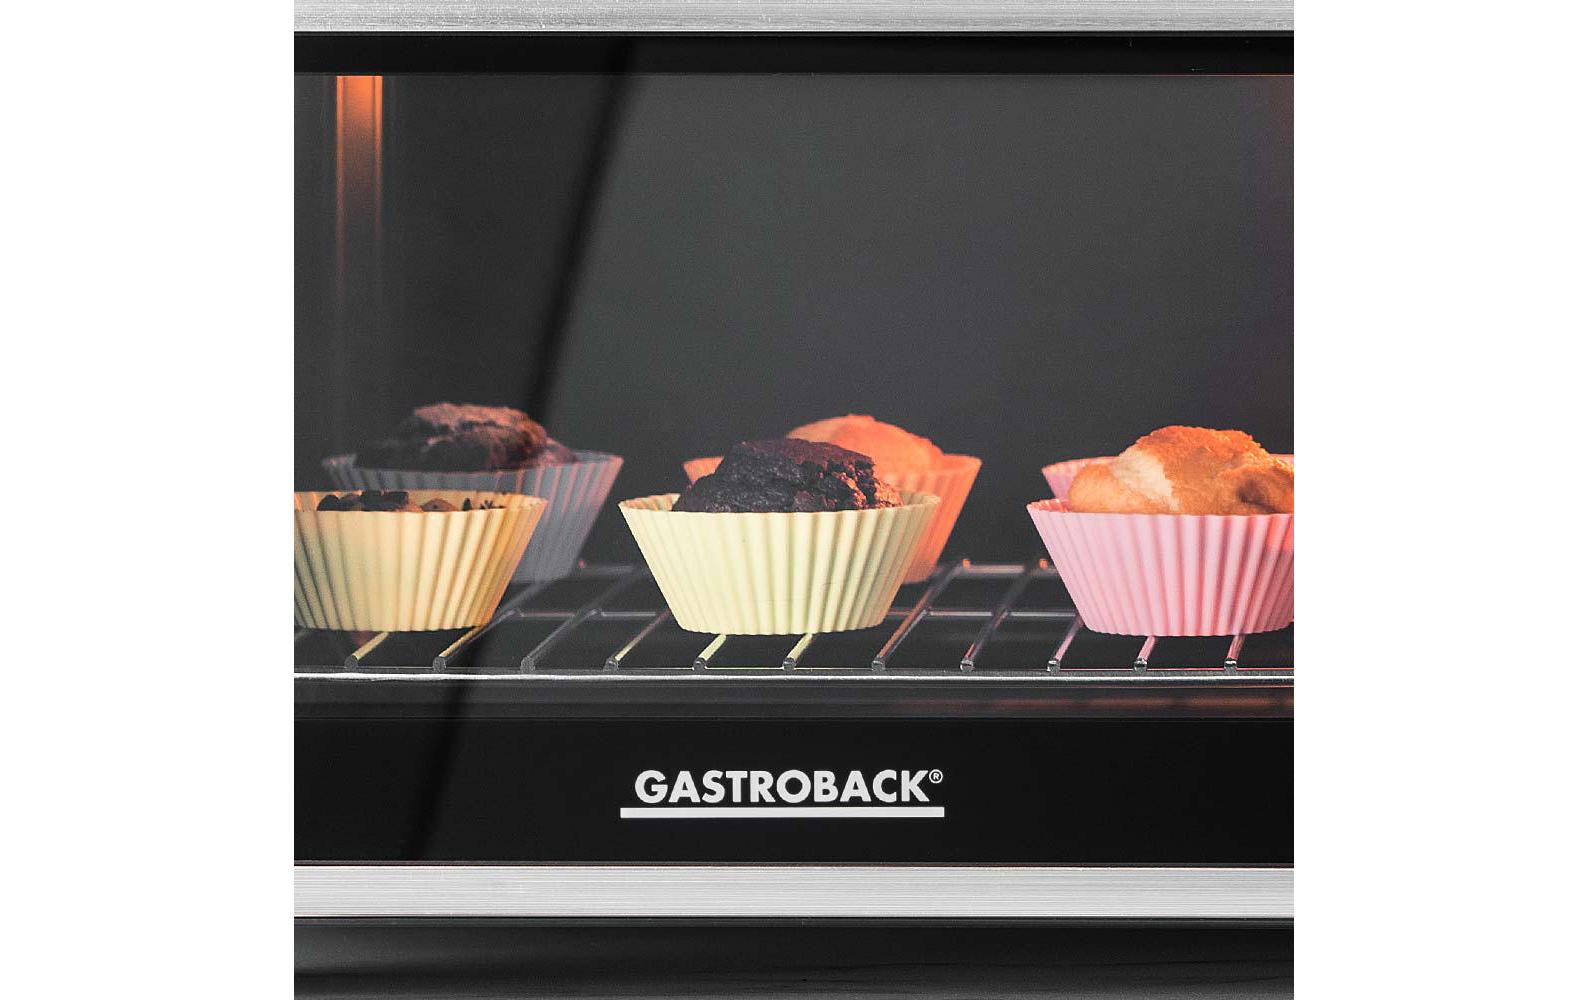 Gastroback Backofen Design Bistro Bake & Grill